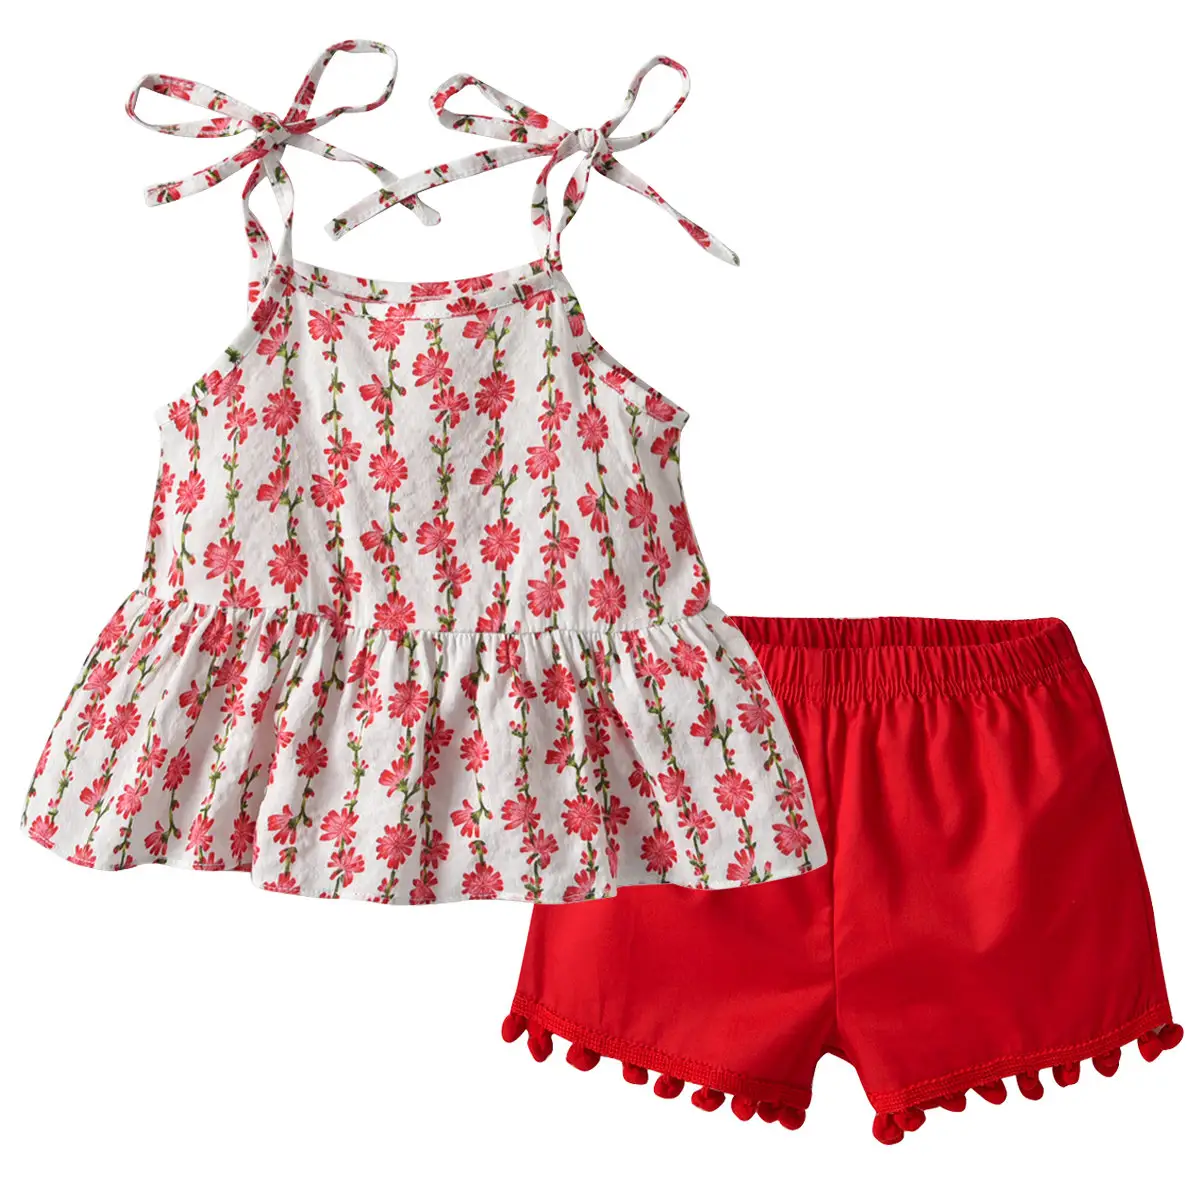 Conjuntos de ropa de verano para niñas pequeñas, Tops sin mangas y pantalones cortos, conjunto de ropa de primavera, 2019